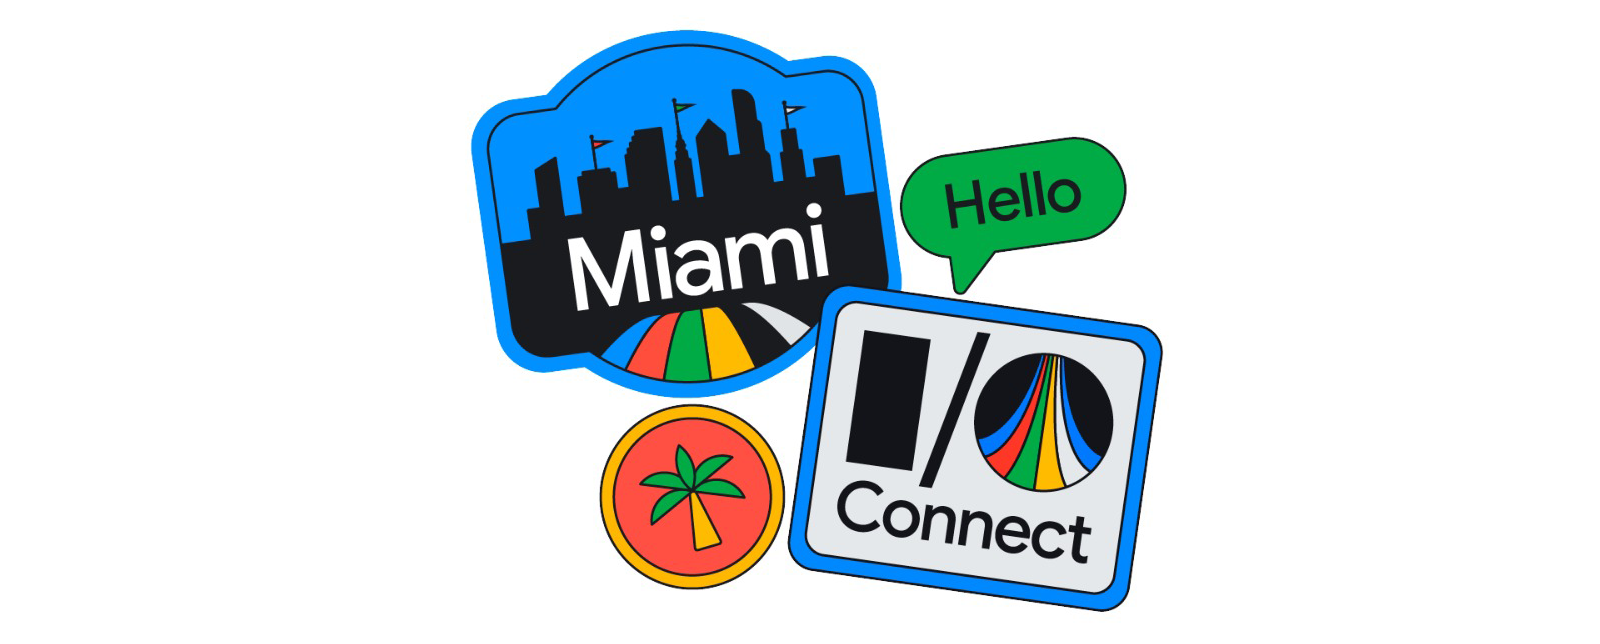 1-Miami-Connect